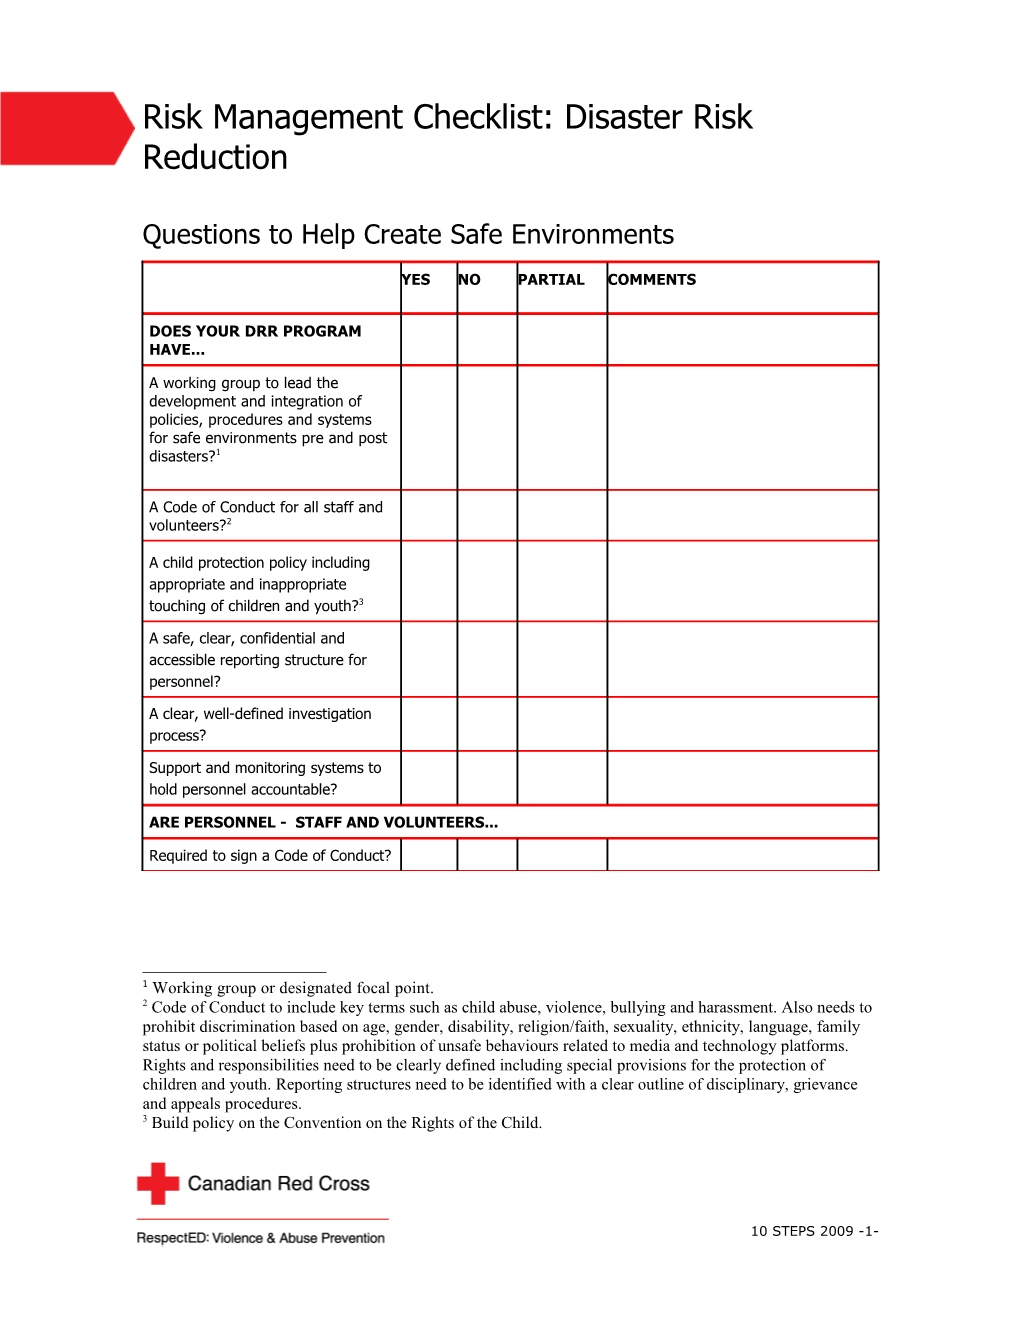 Risk Management Checklist s2